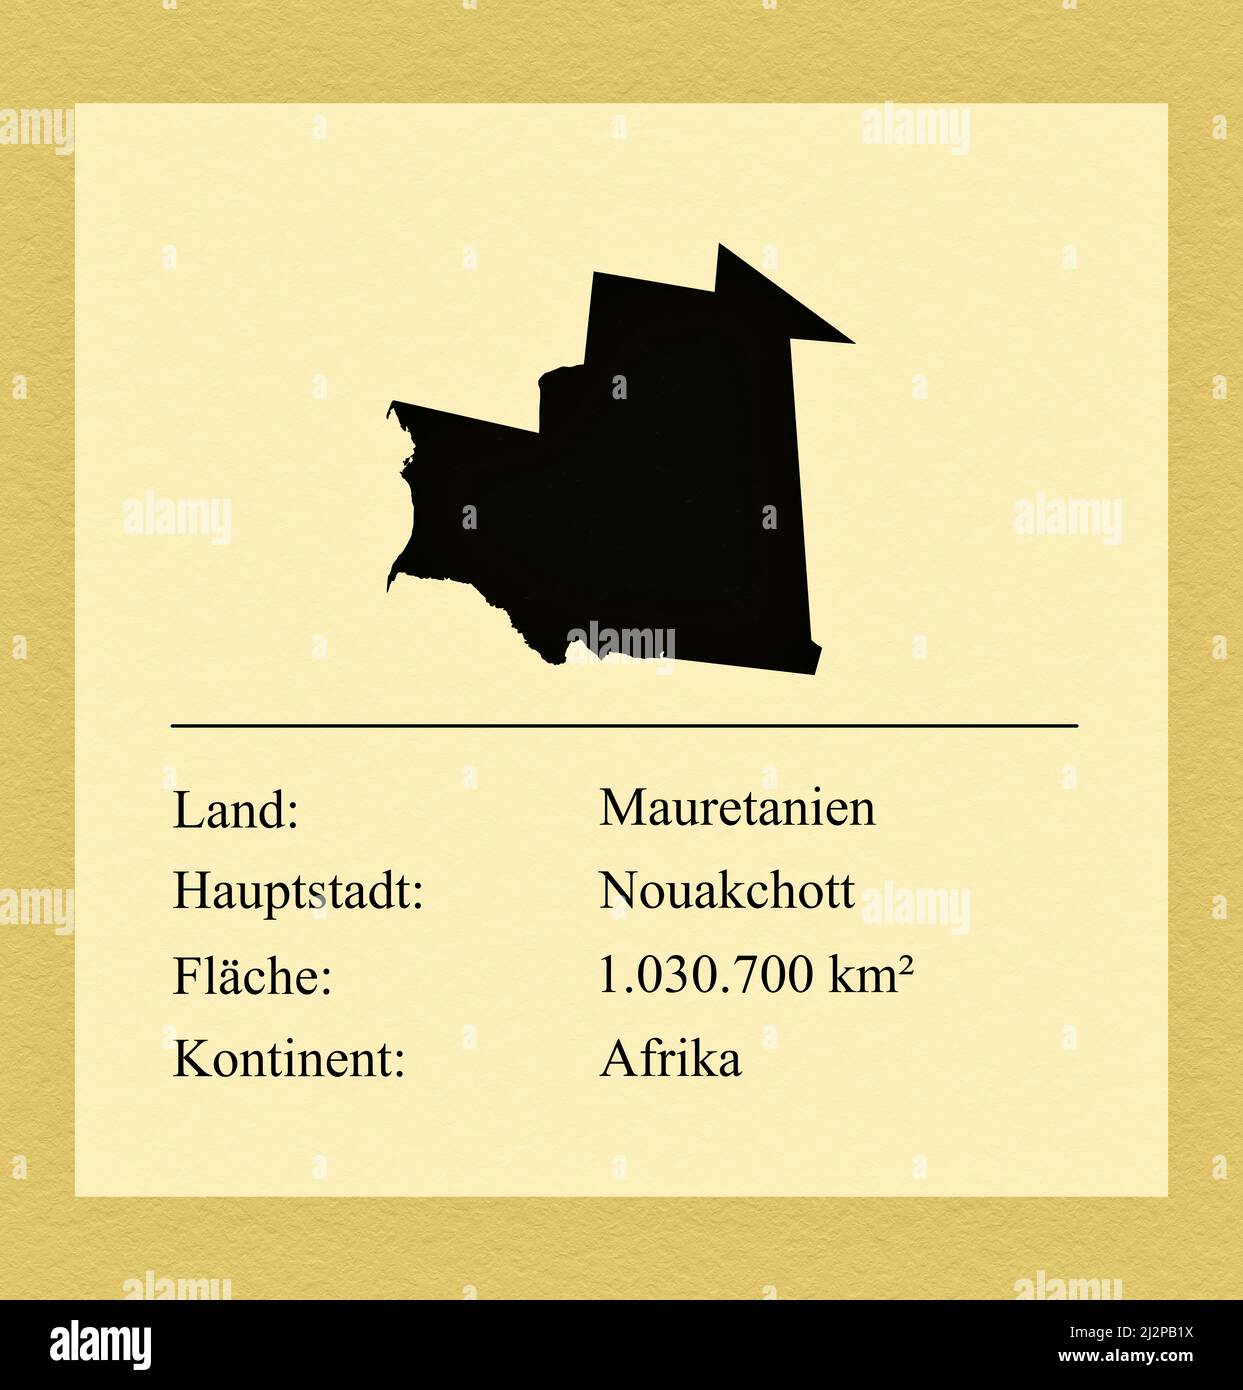 Umrisse des Landes Mauretanien, darunter ein kleiner Steckbrief mit Ländernamen, Hauptstadt, Fläche und Kontinent Foto Stock